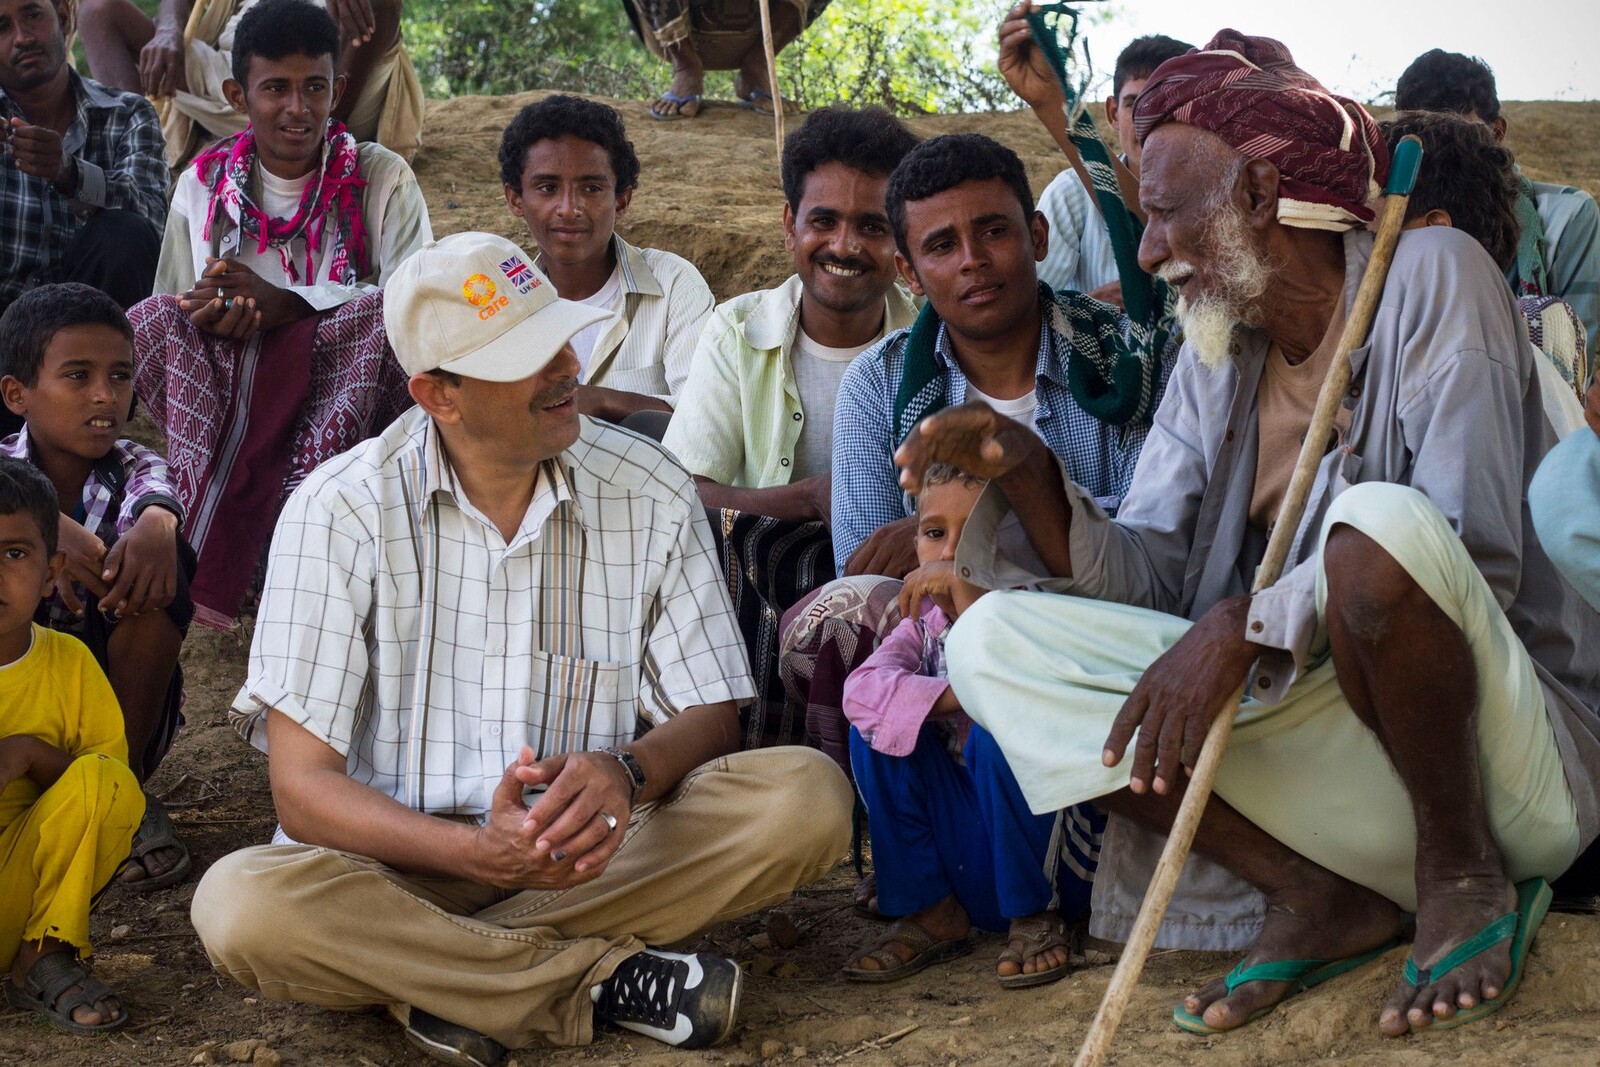 Helfer im Jemen suchen gemeinsam mit der Dorfgemeinde nach Lösungen für die aktuelle Notlage  